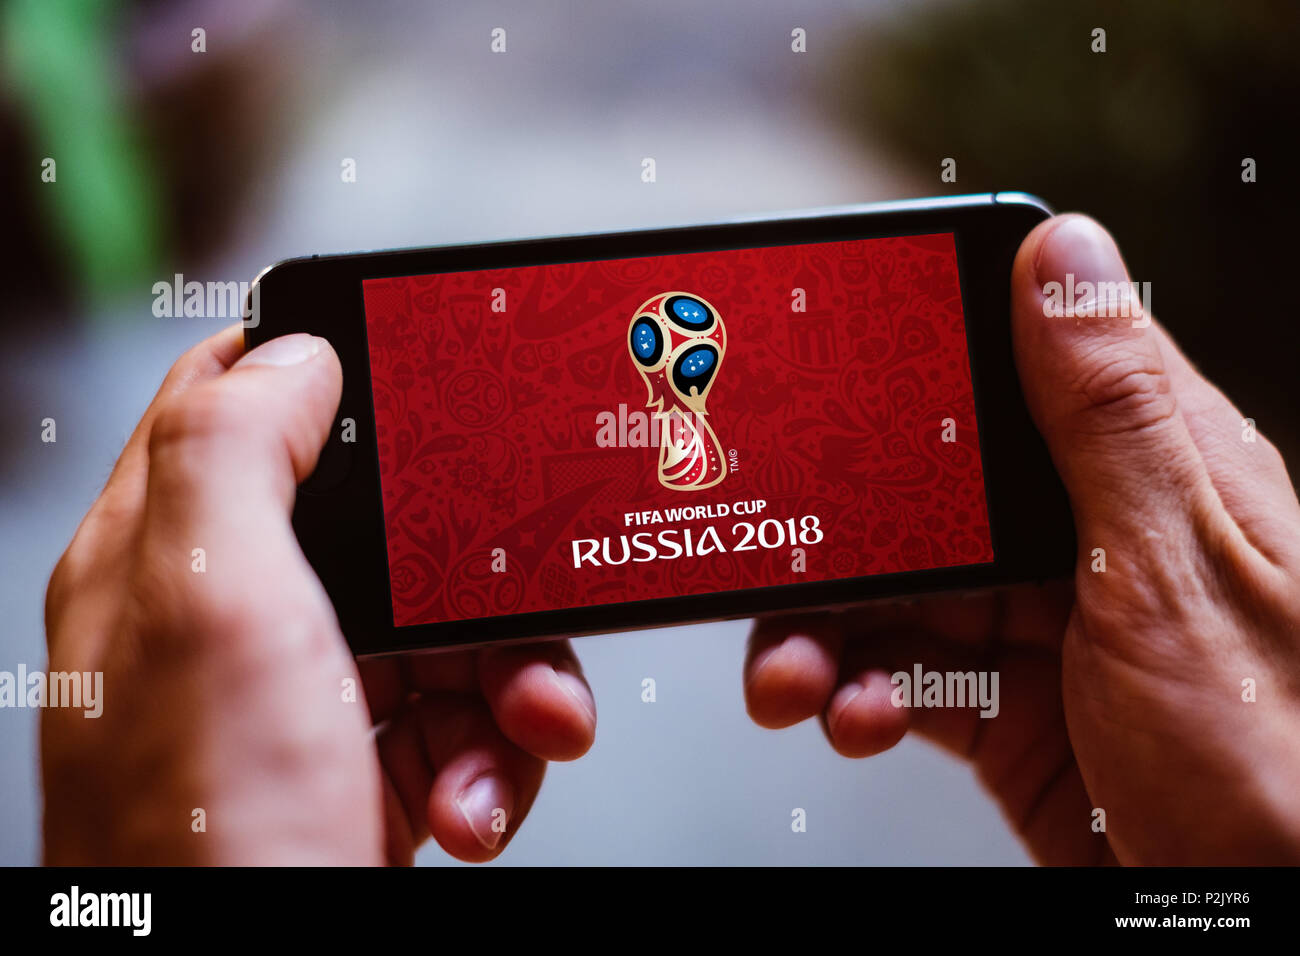 Primer plano de la pantalla del smartphone con el fútbol WORLDCUP 2018 Logotipo en Rusia Foto de stock